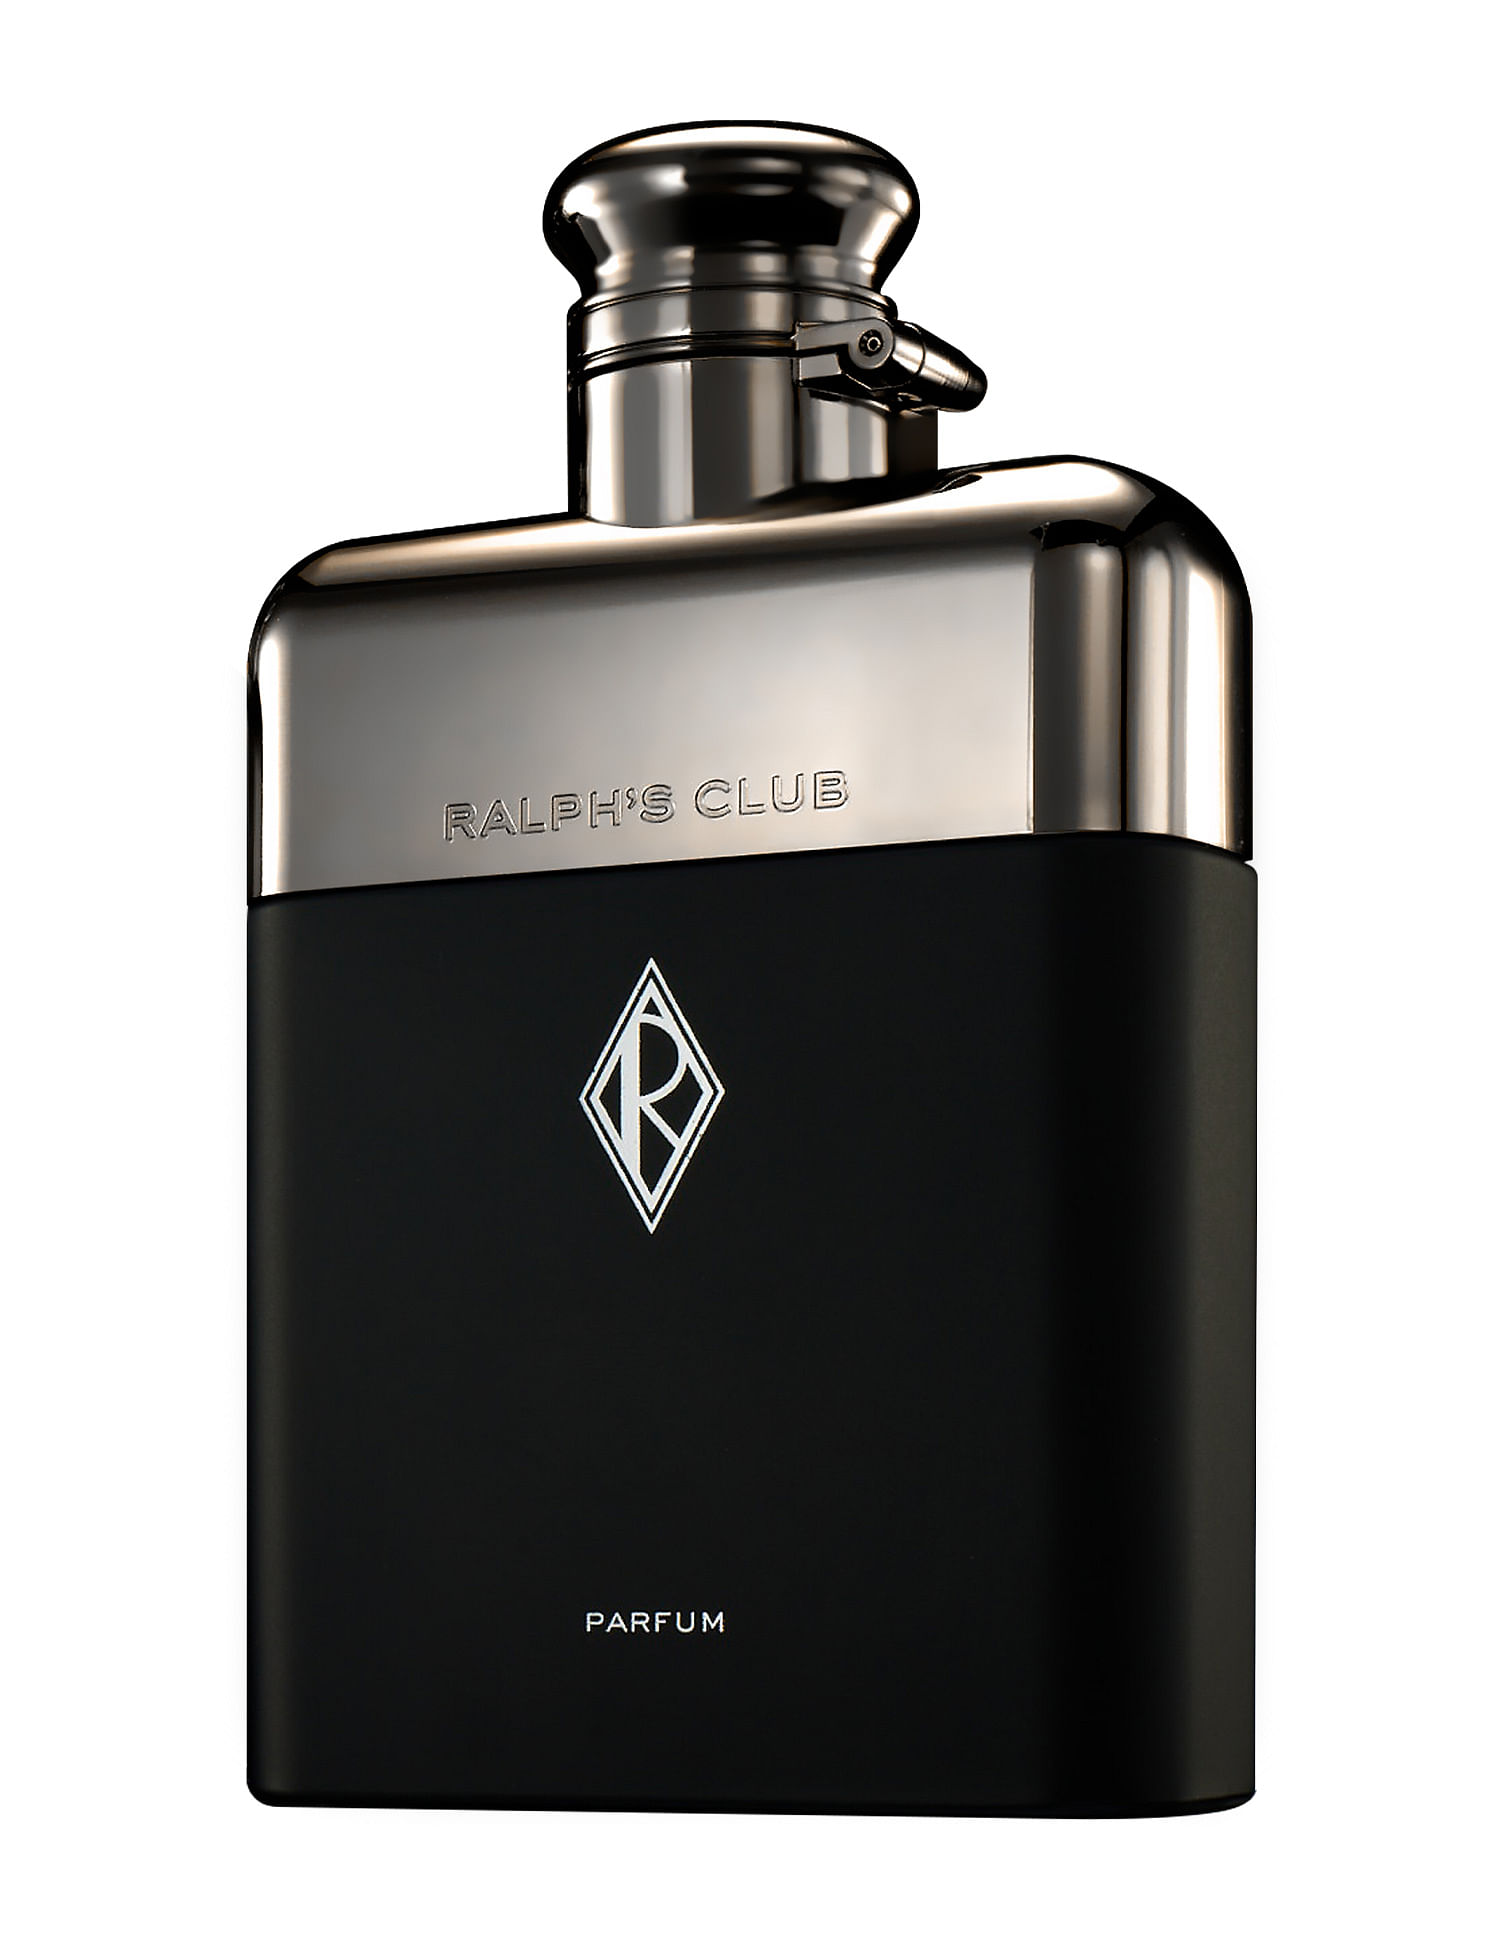 Buy RALPH LAUREN Ralph's Club Parfum 